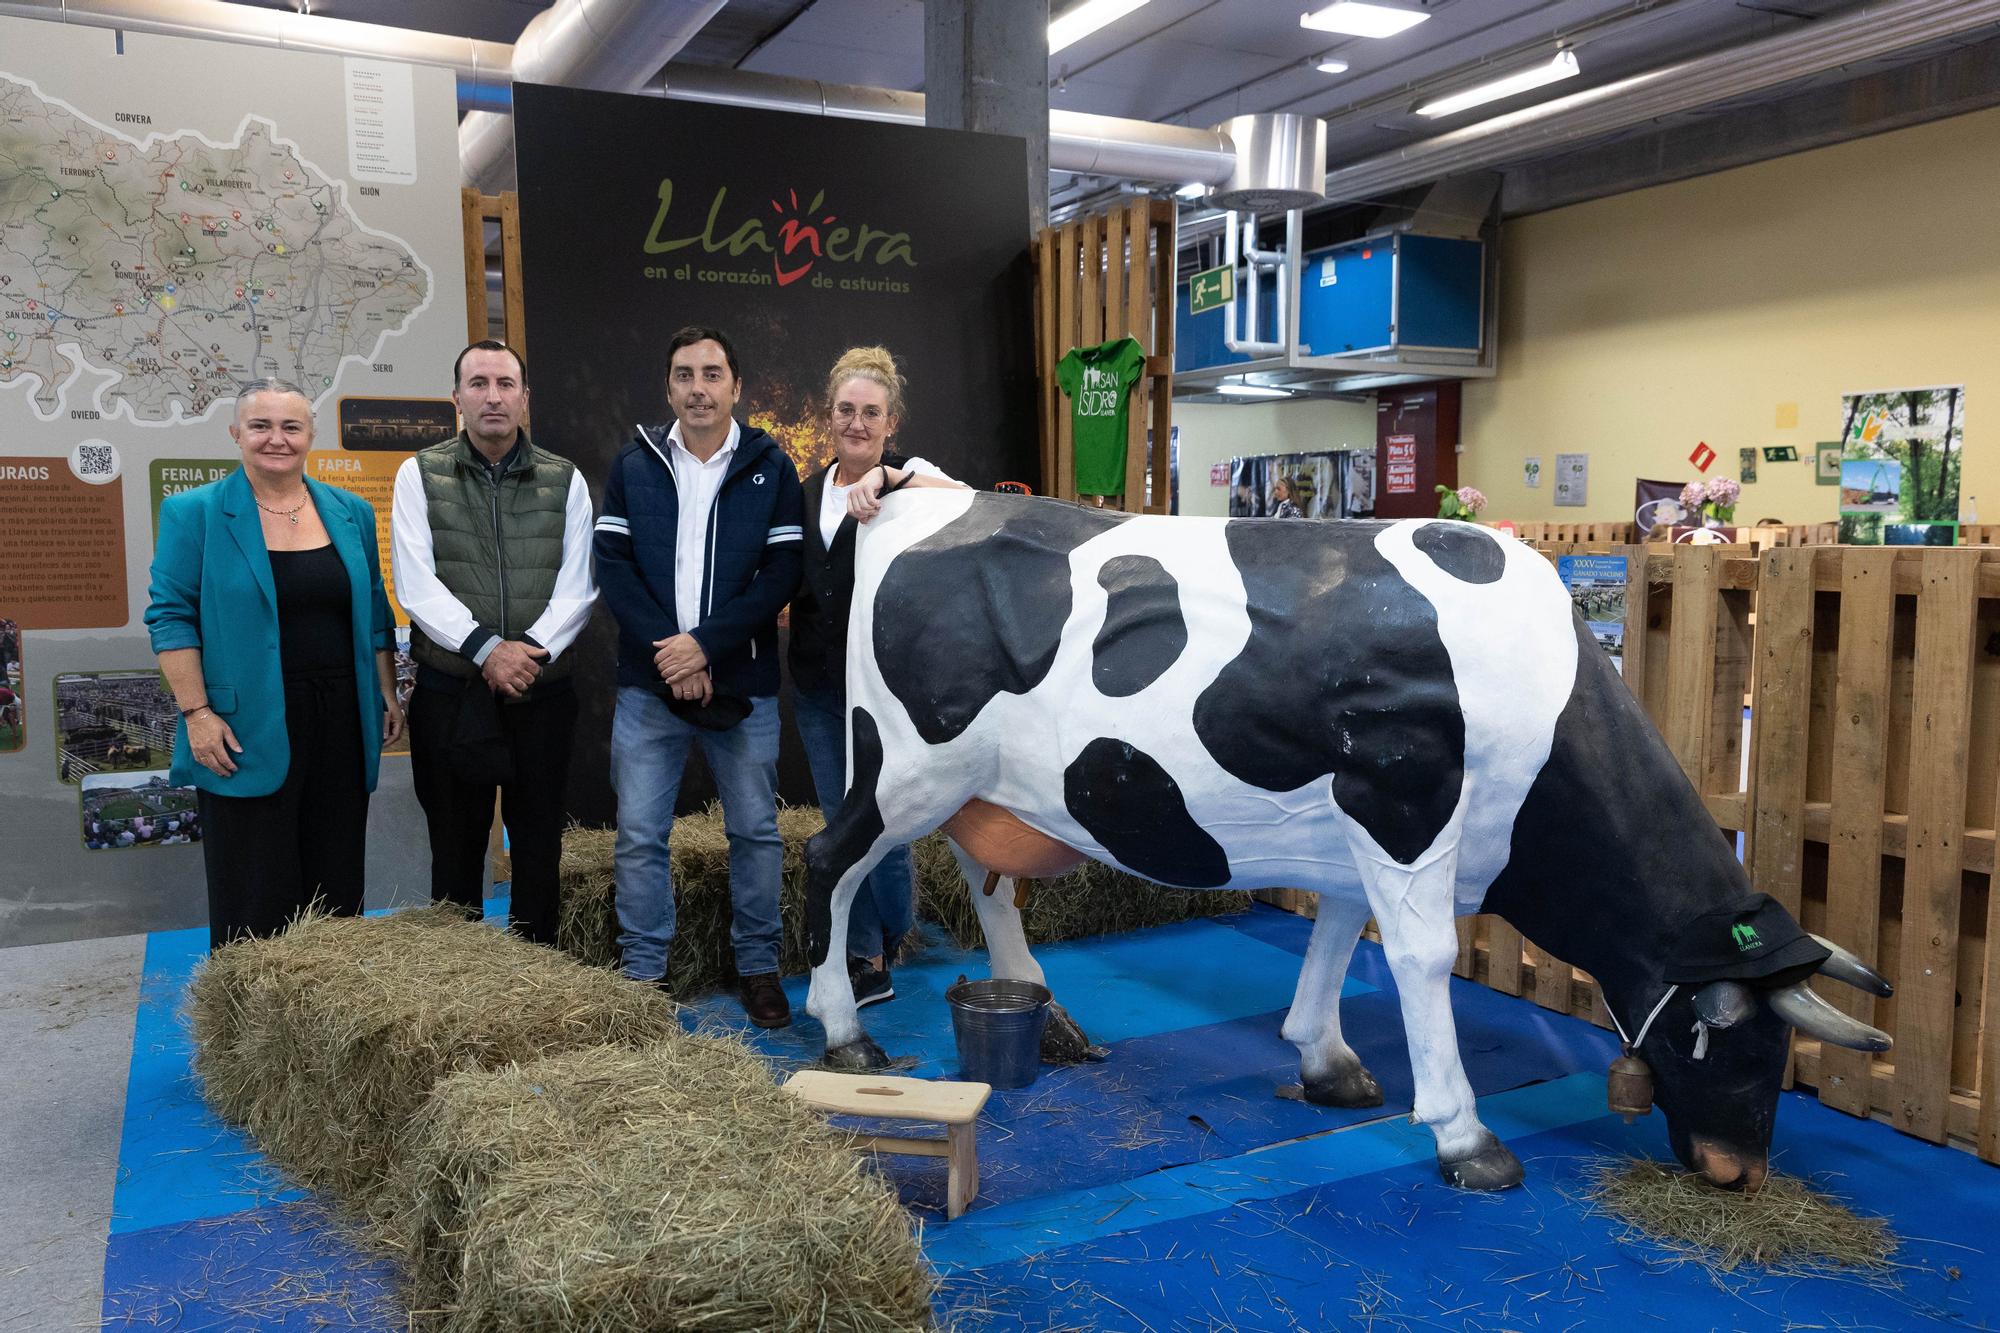 Exhibición de potencial ganadero, agrícola y turístico: así es el stand de Llanera en Agropec